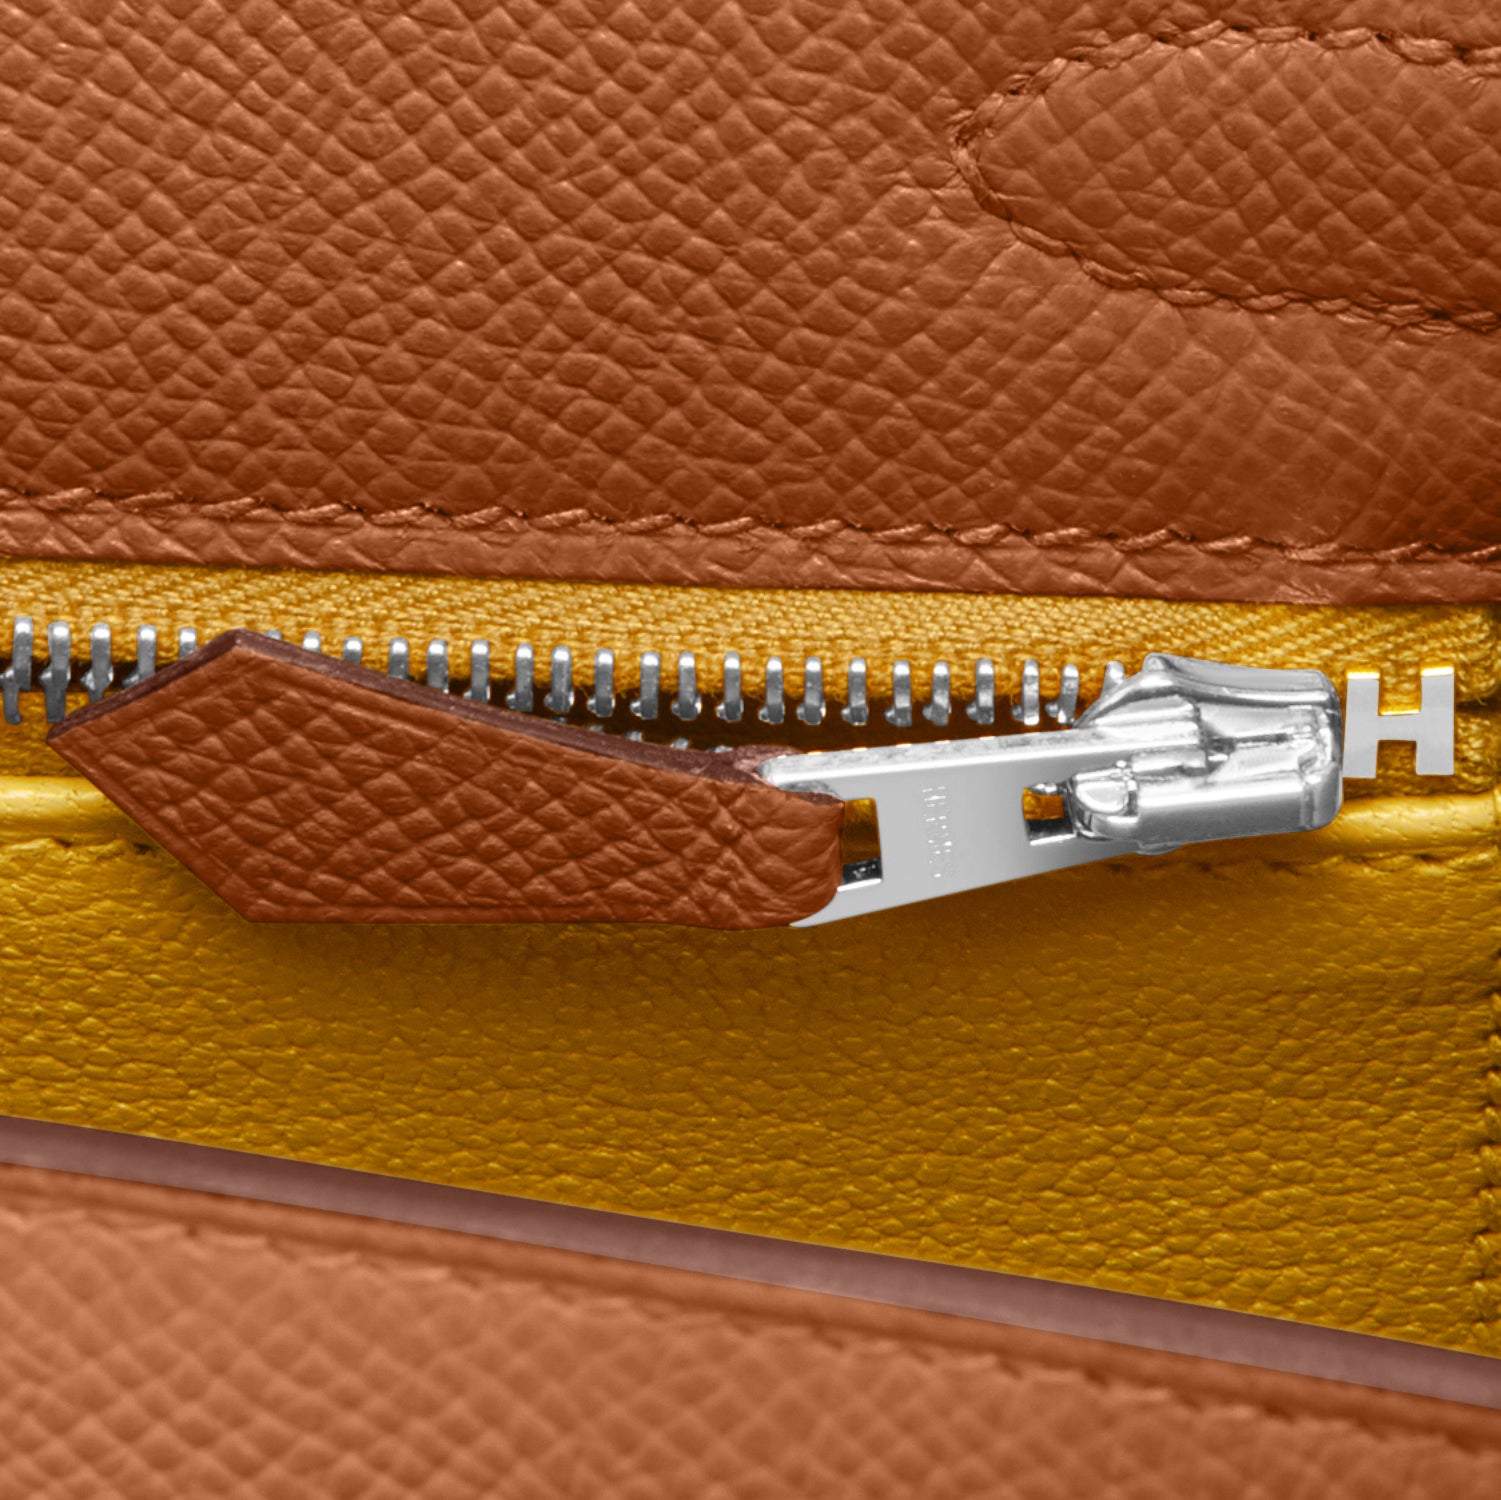 Hermes Kelly Pochette Jaune Ambre Gold Hardware Clutch Amber Bag Y Stamp,  2020